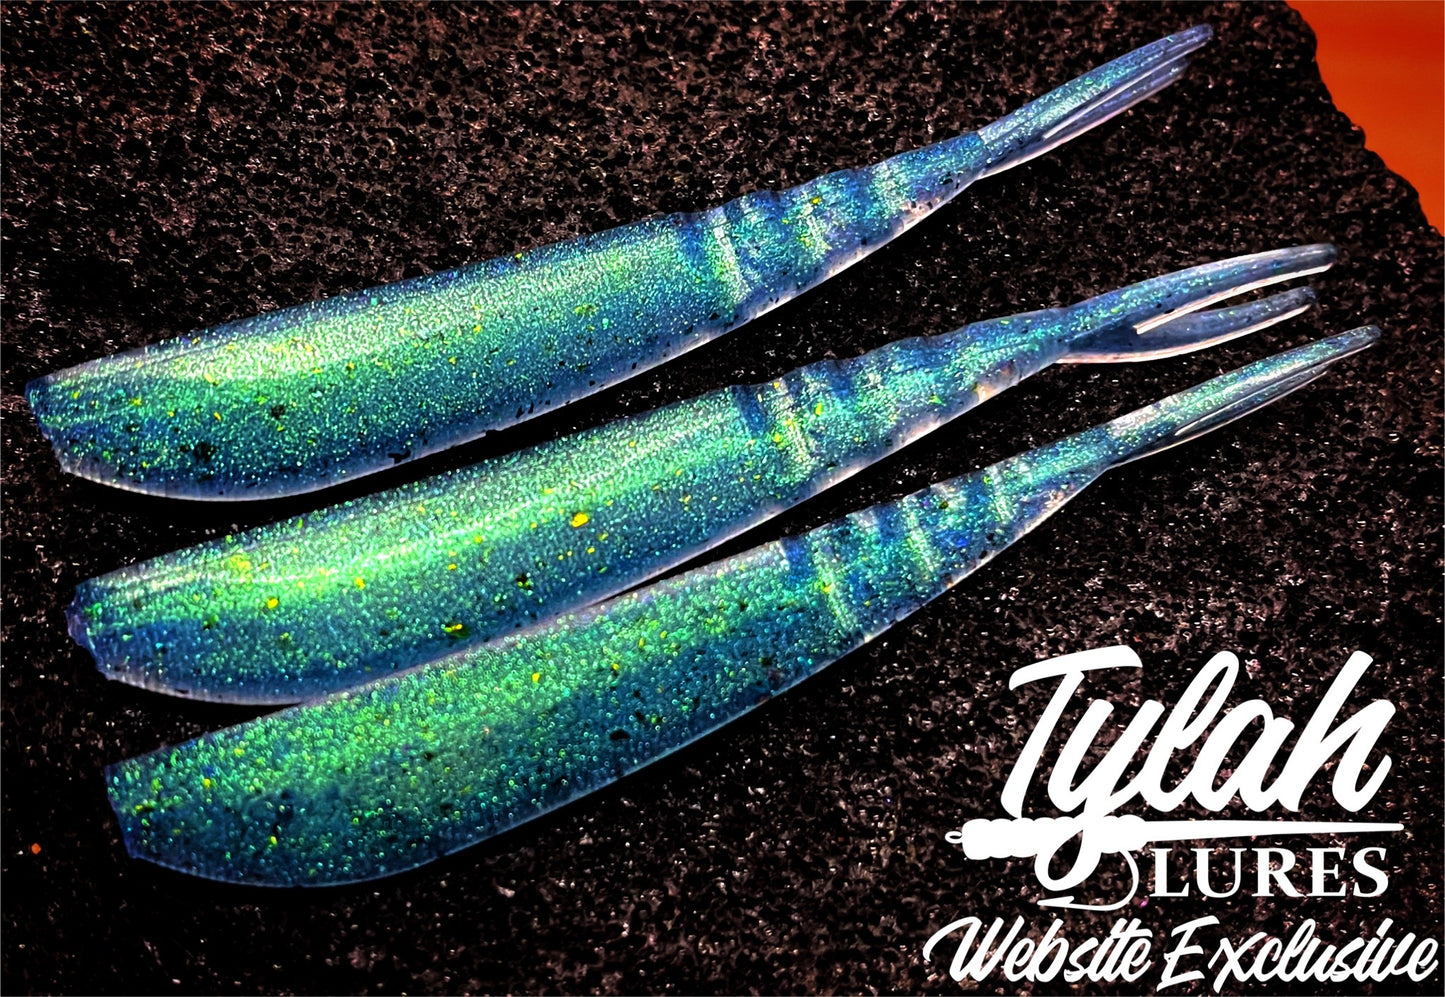 TylahLures Website Exclusive 3.75 in BaitFish